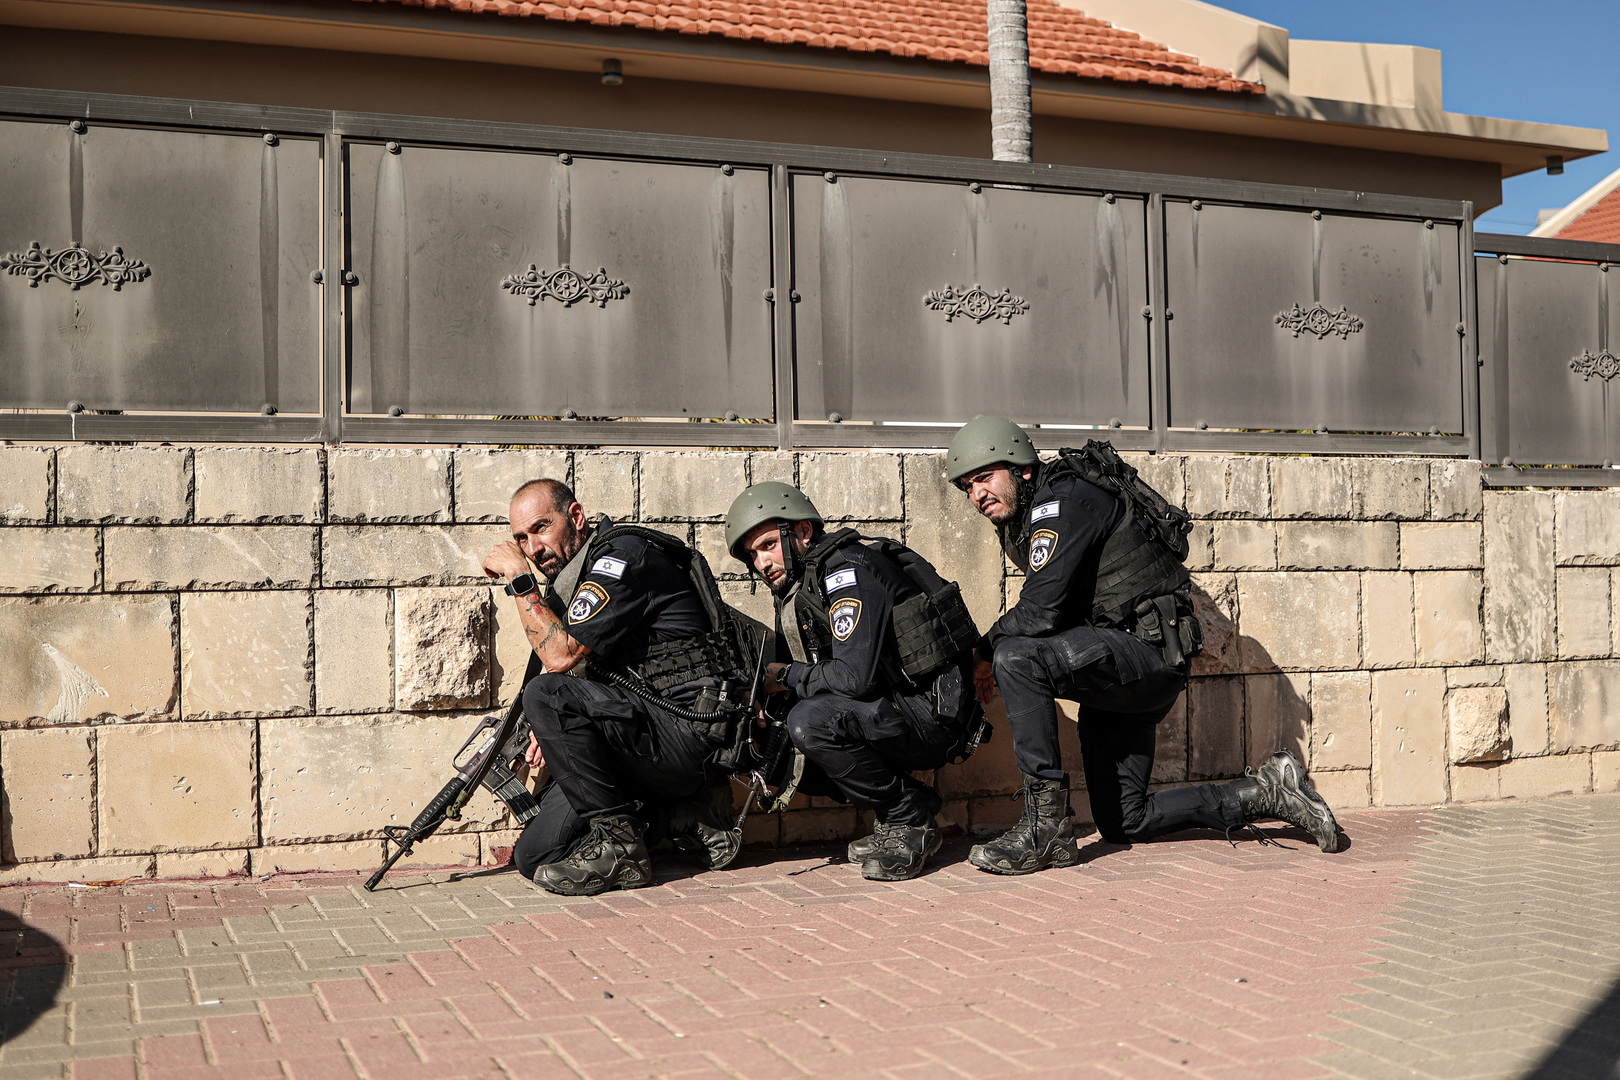 الجيش الإسرائيلي يهدم مركز شرطة إسرائيلي بعد فشله باقتحامه بسبب تحصن فلسطينيين بداخله (فيديو)